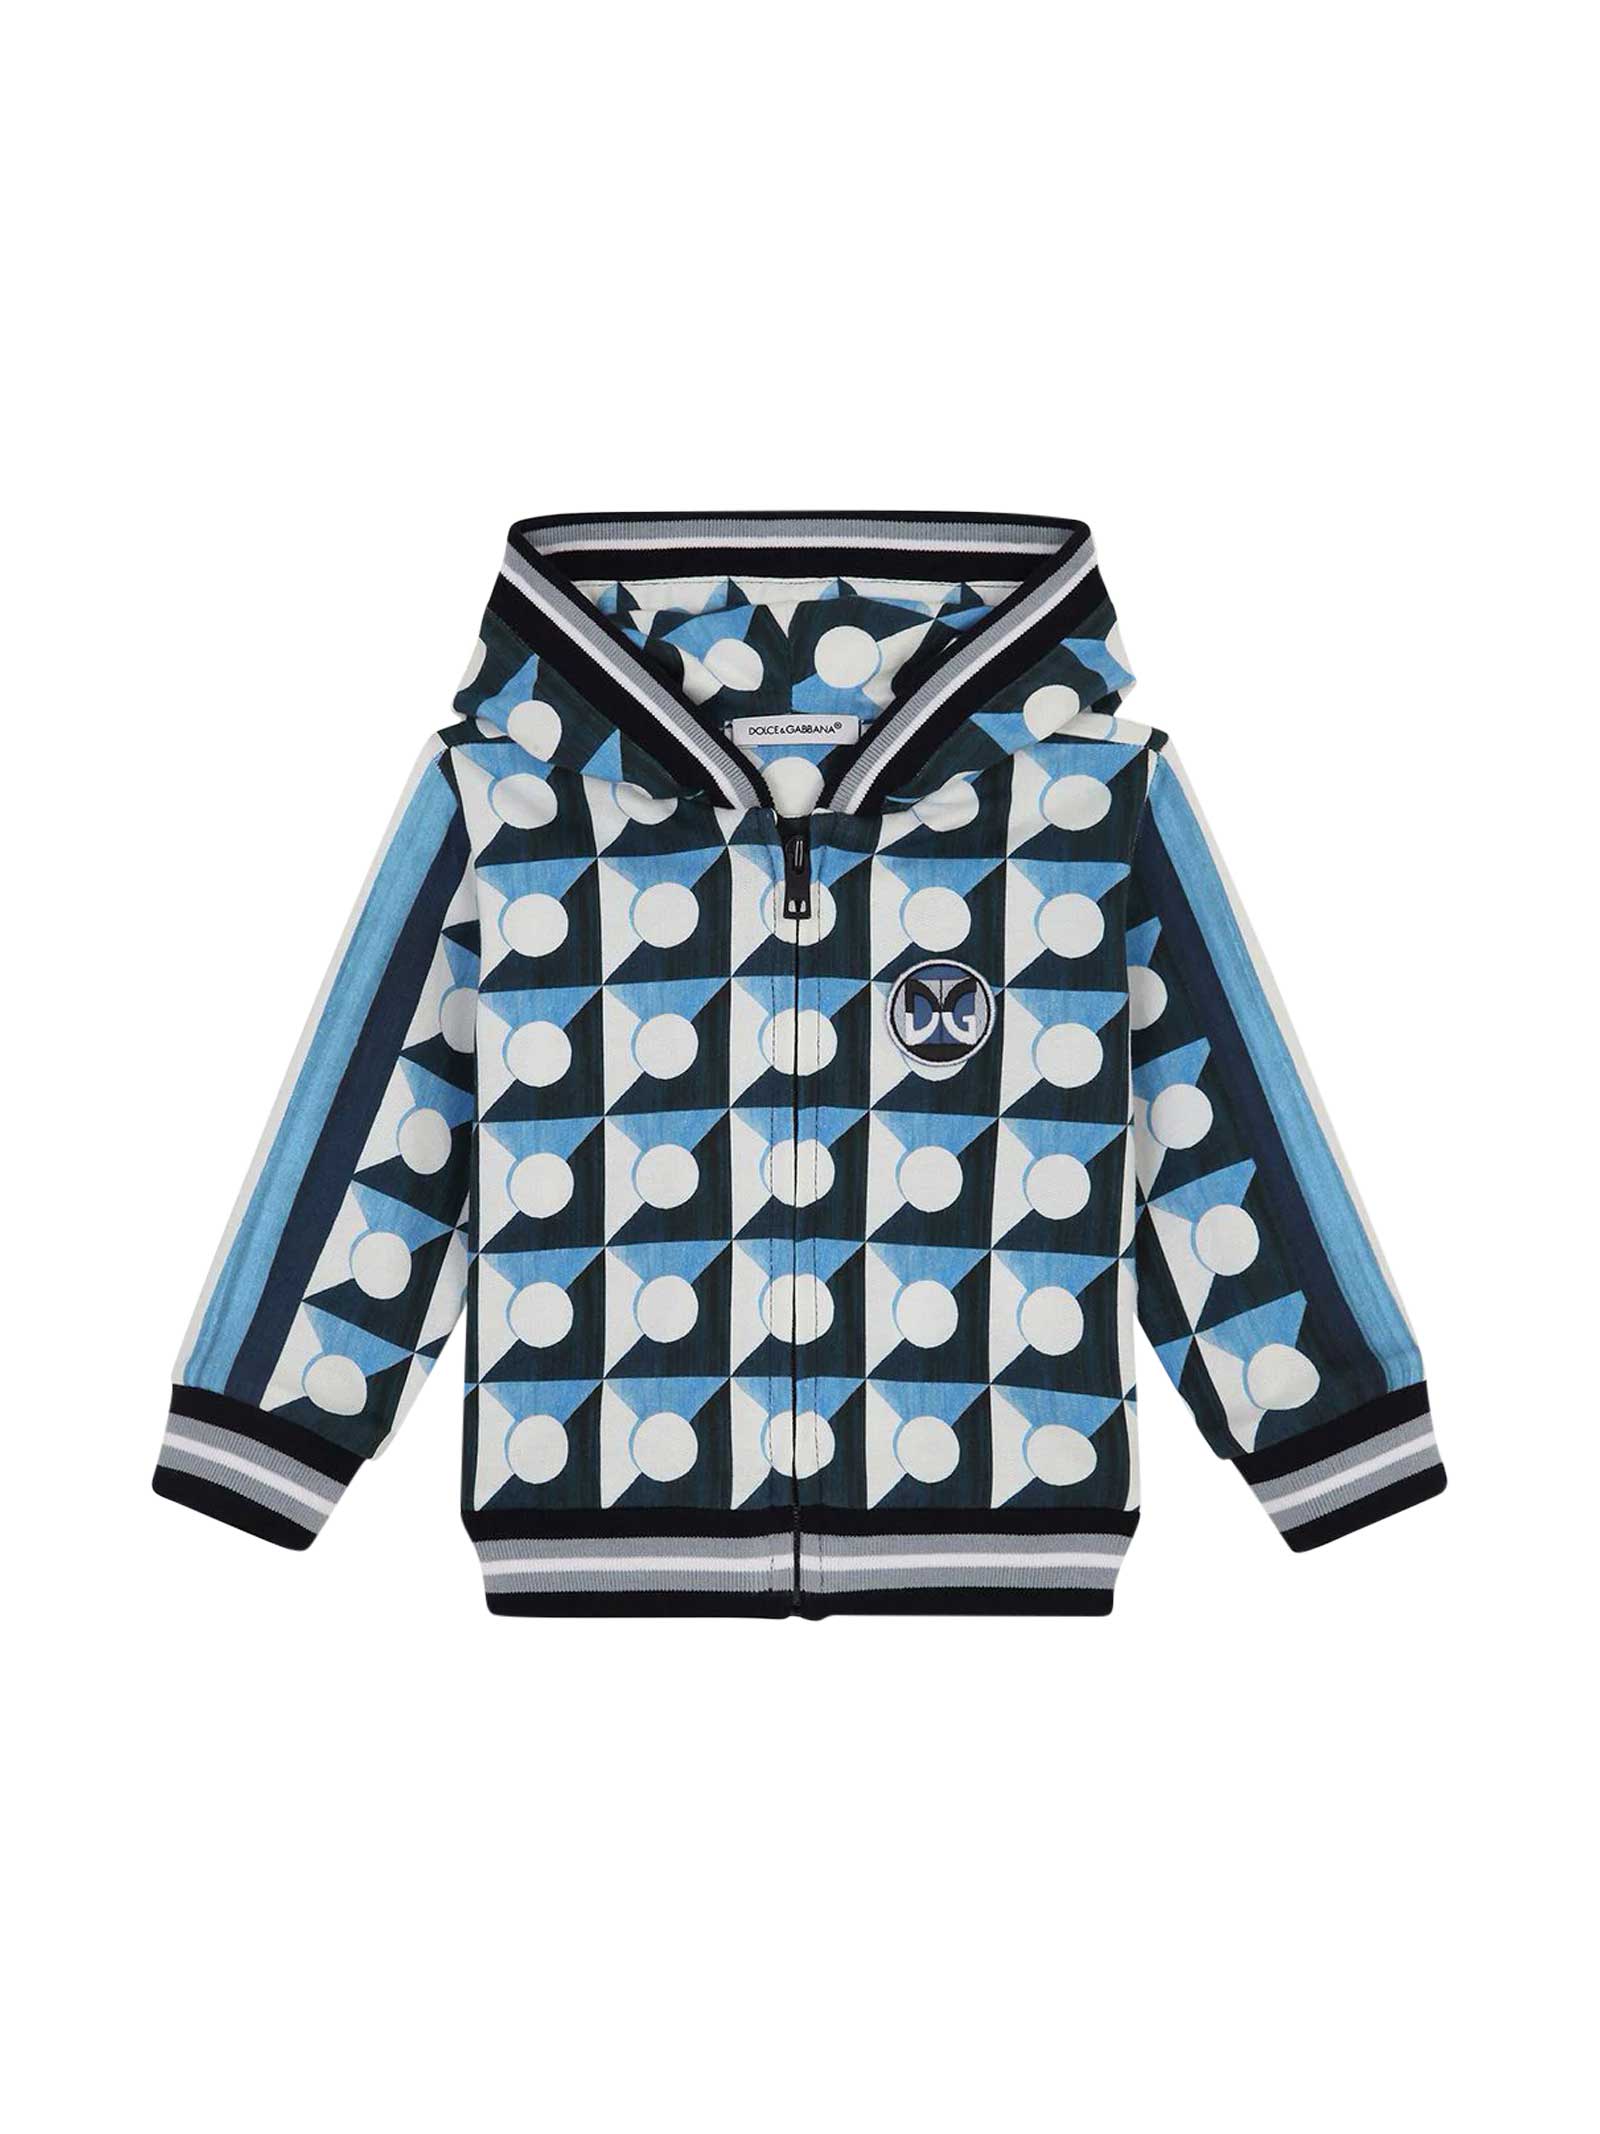 Dolce & Gabbana Babies' Bluette Sweatshirt